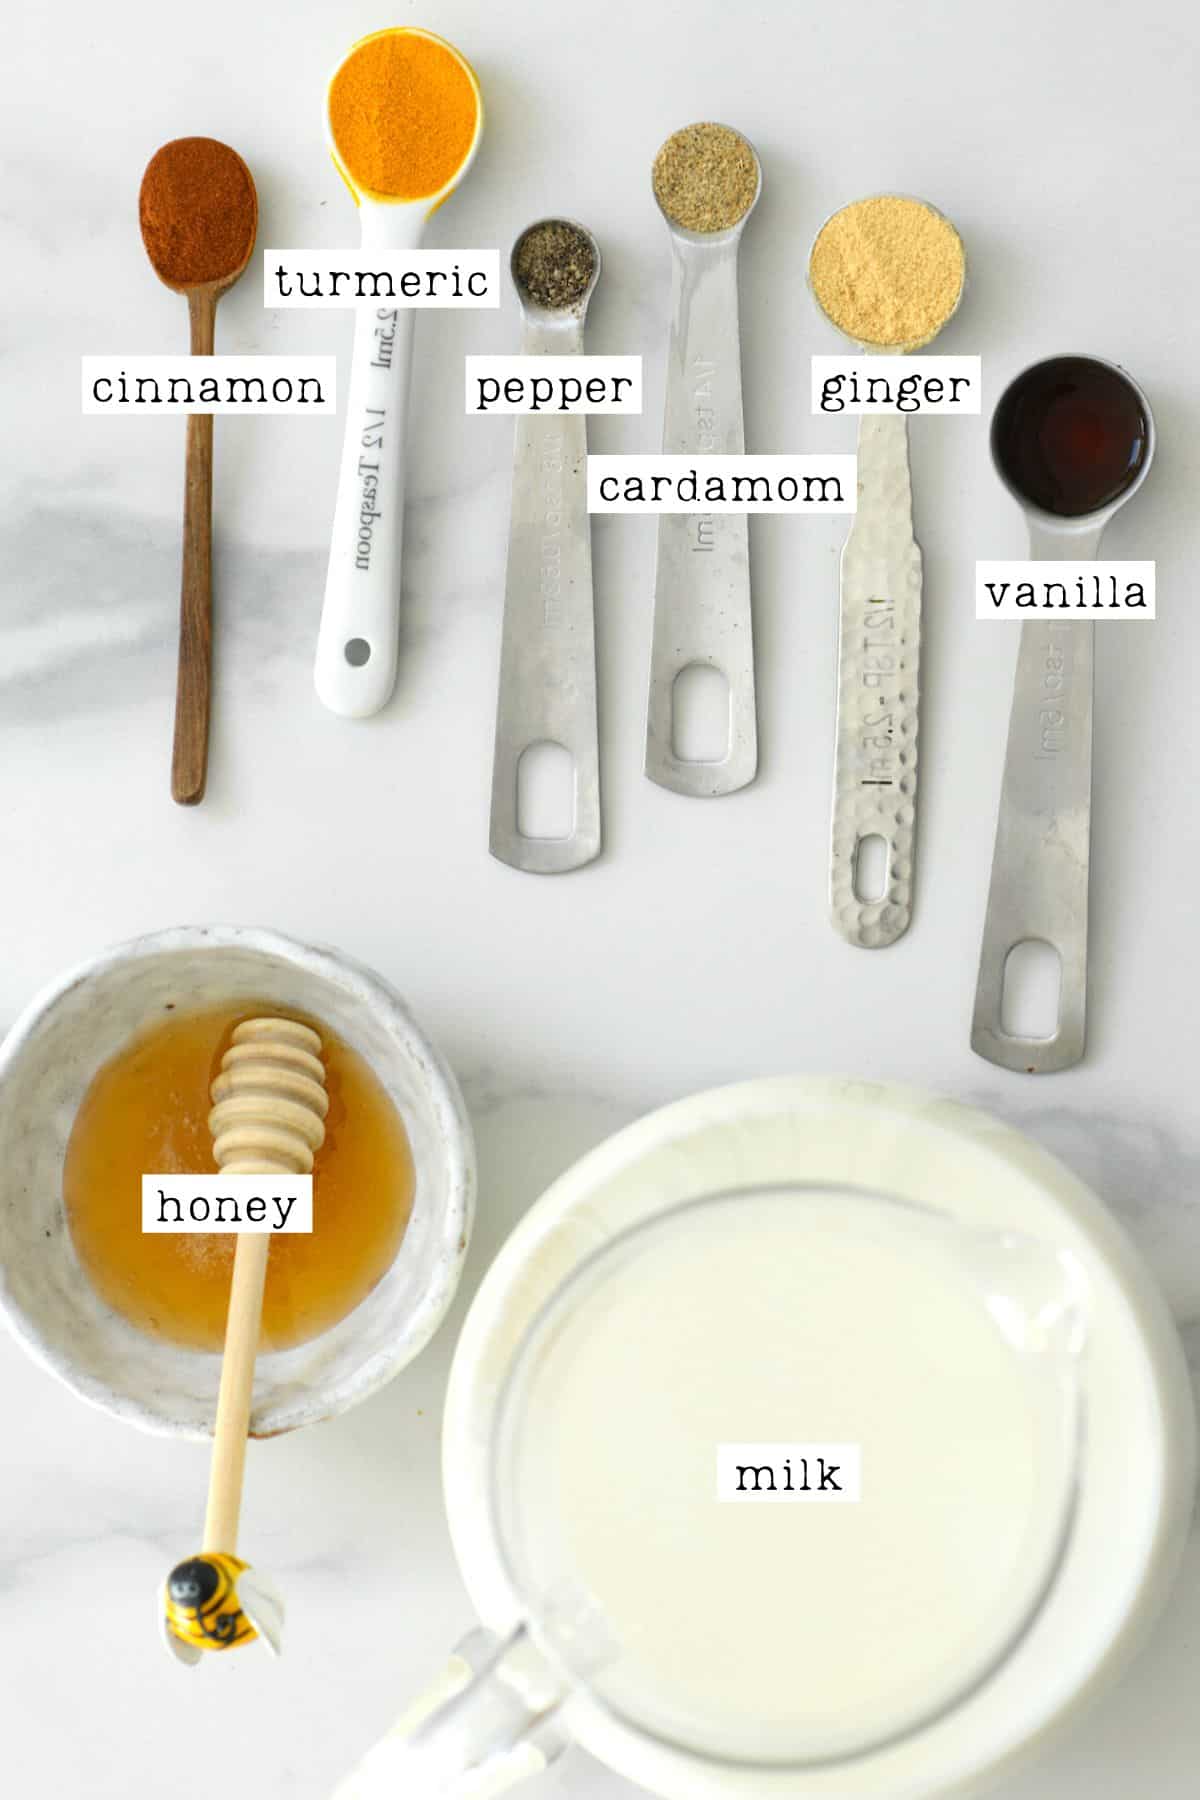 Ingredients for golden milk